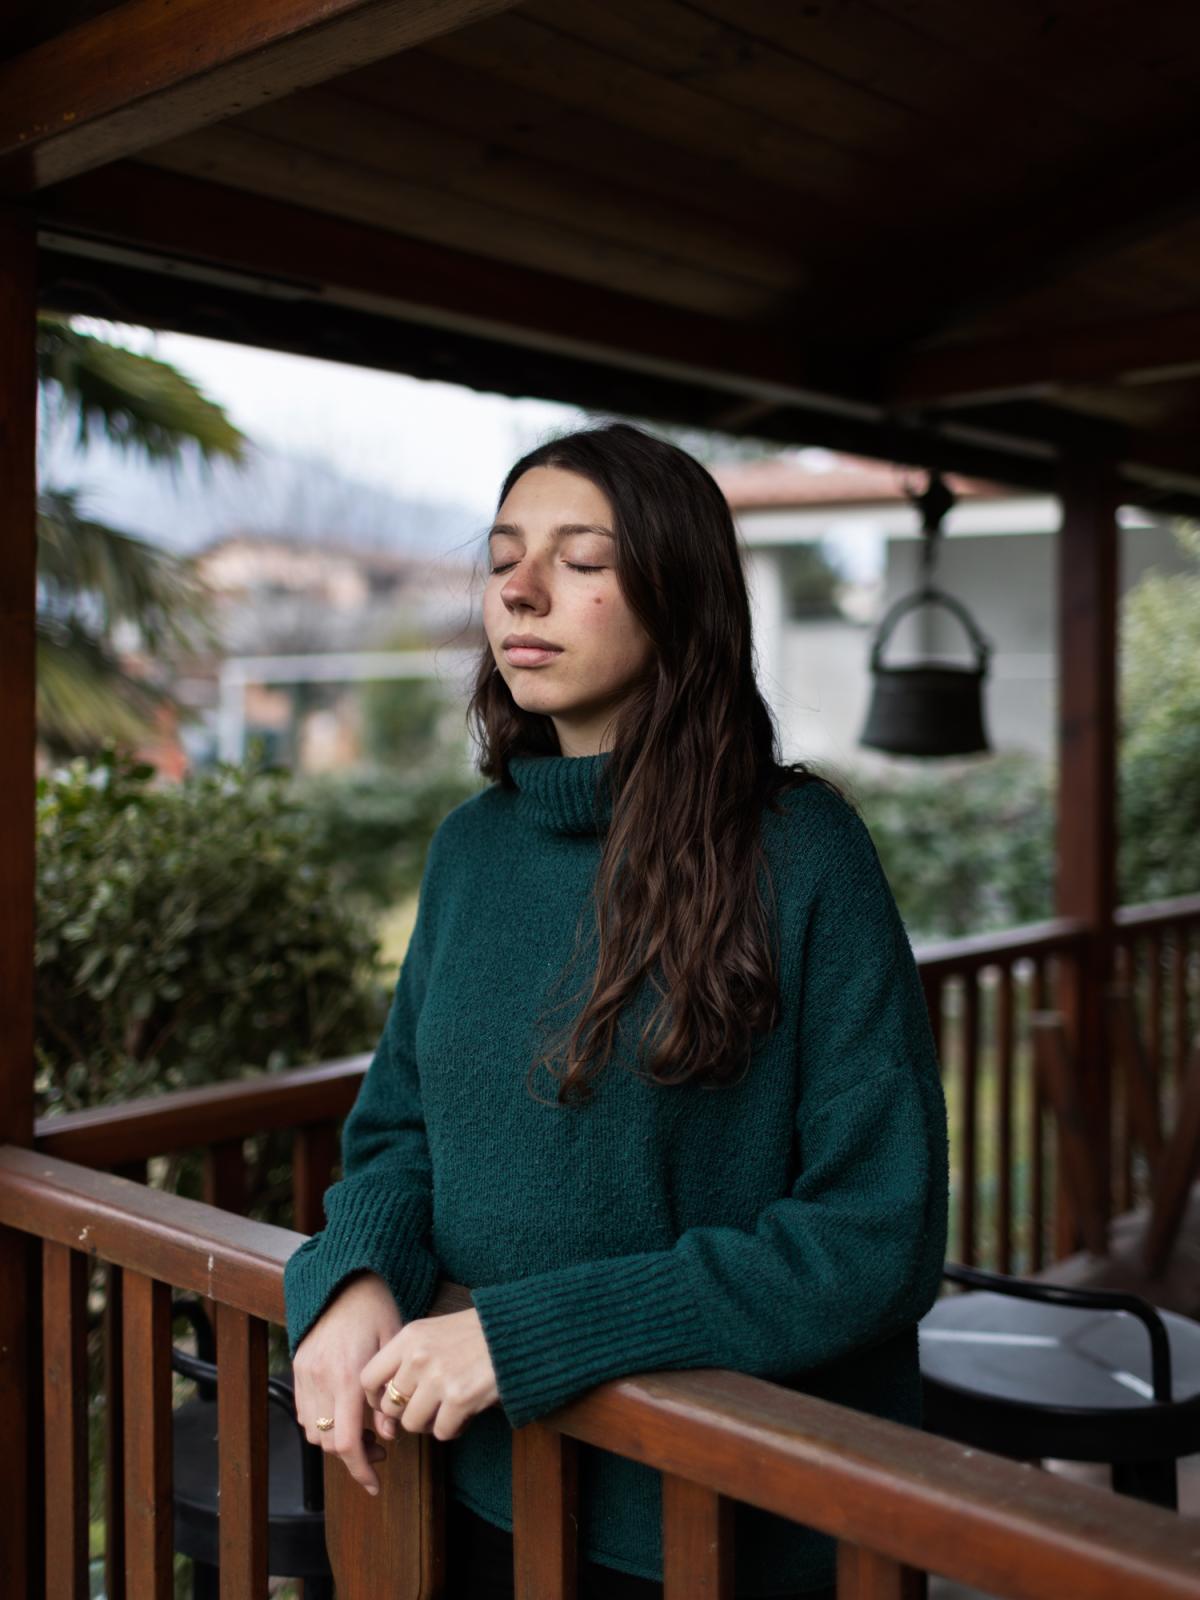 We are still dreaming  - Alessia, 25, in her house garden in Chiusa di San...